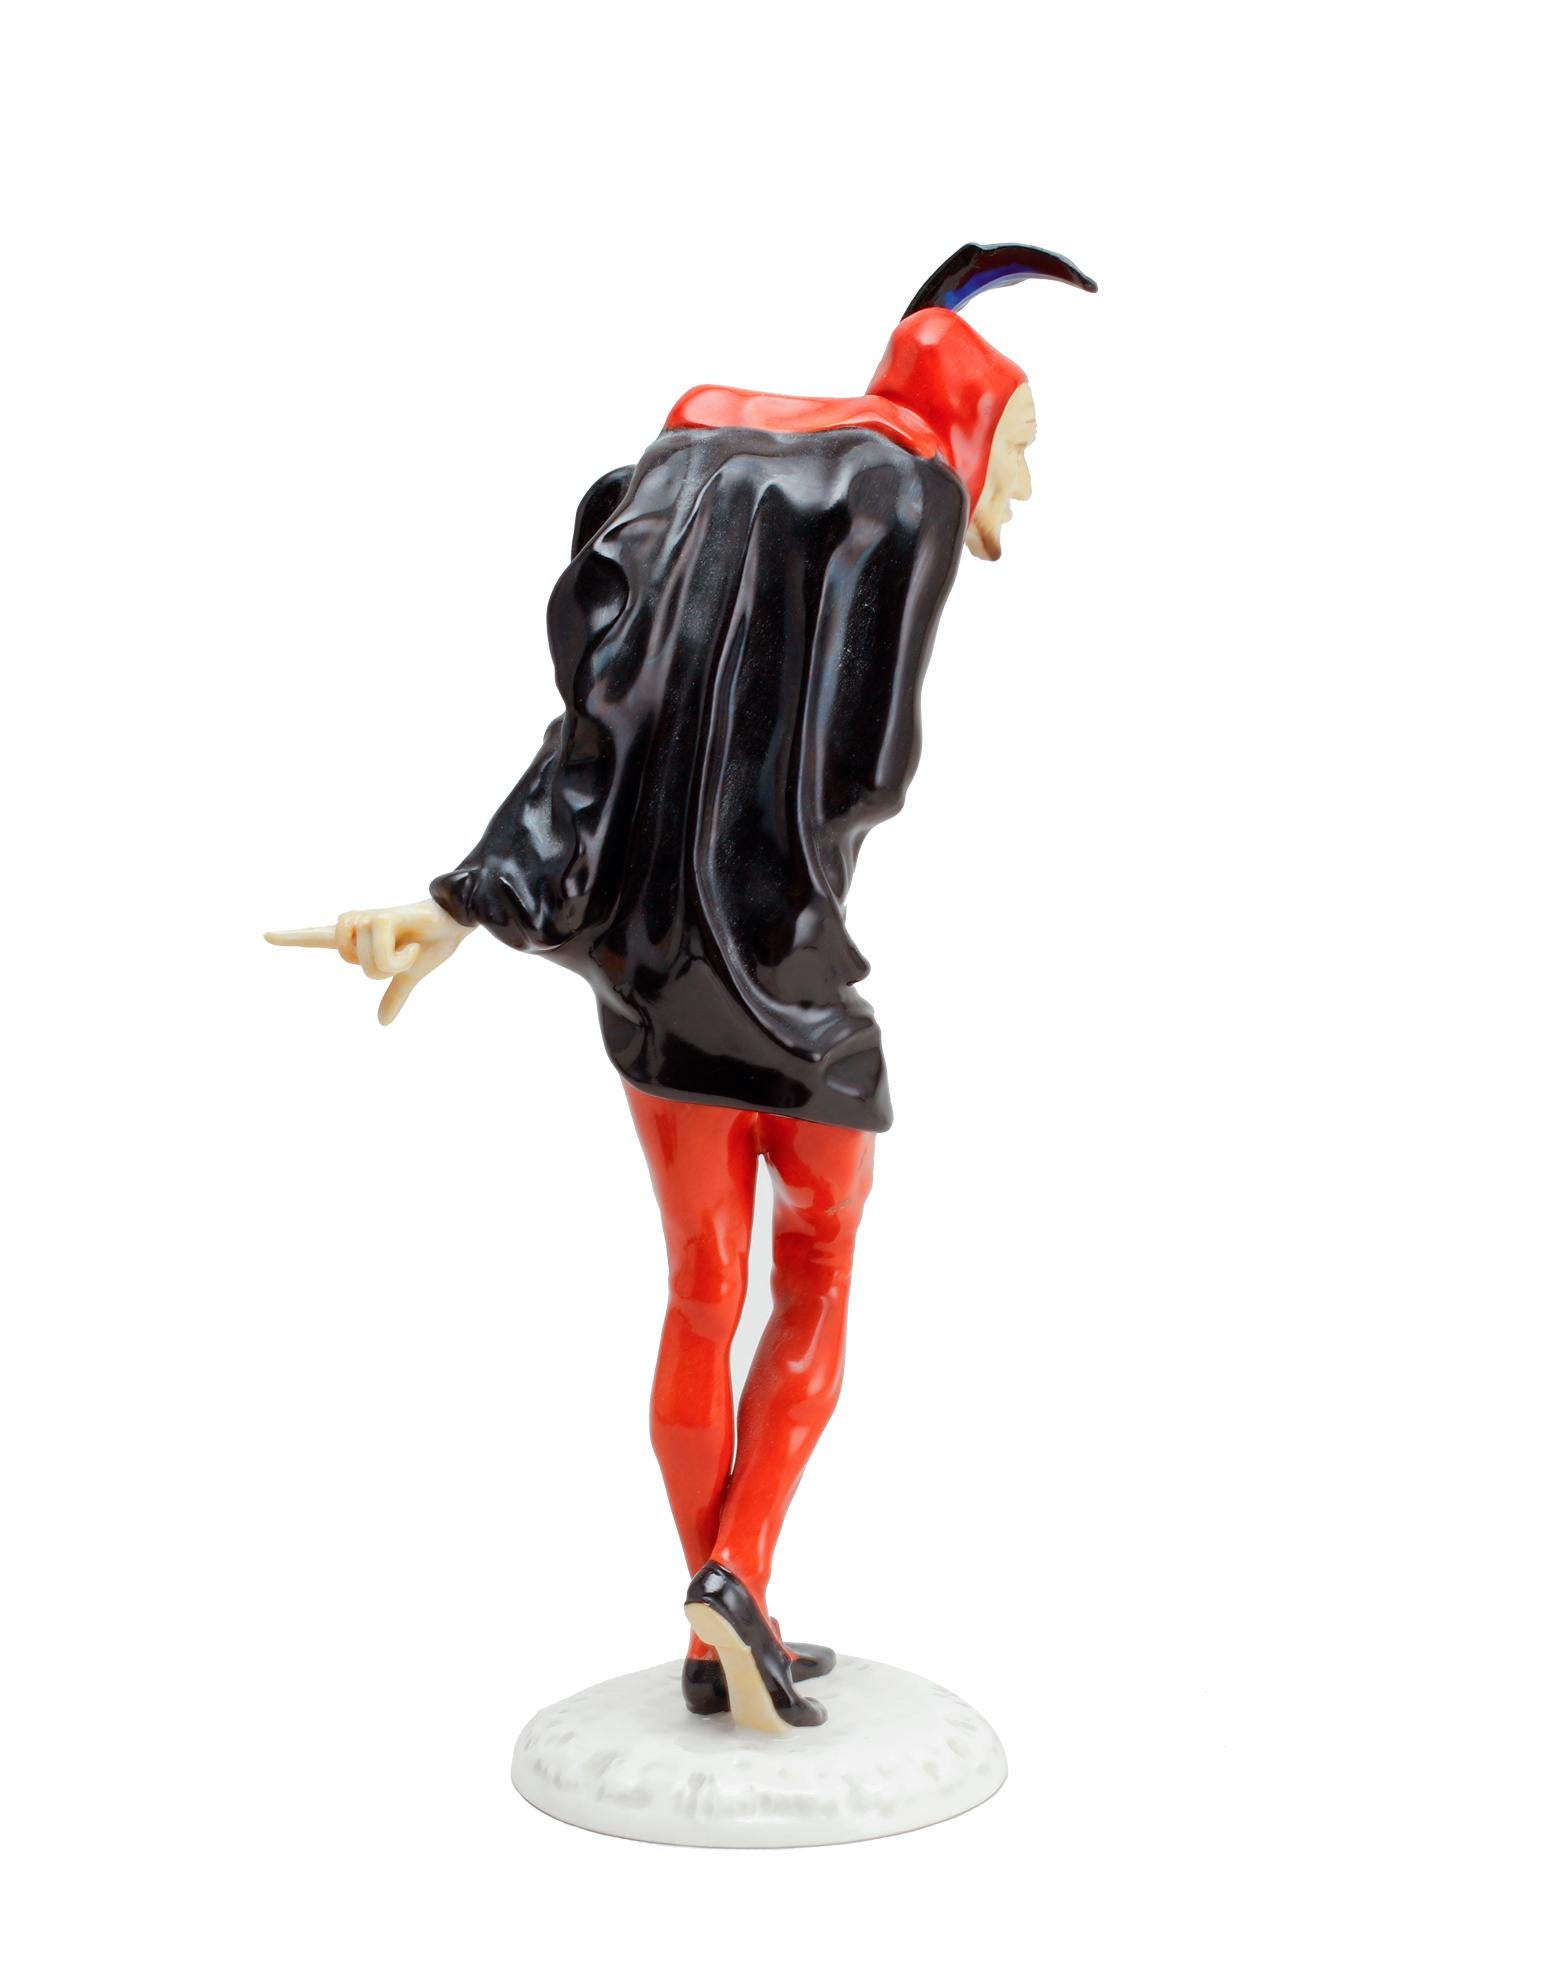 Mephisto (Faust) sous forme de figurine flamboyante, conçue par Karl Tutter (1883-1969), pour Hutchenreuter, Selb Bavière. Méphisto est une entité dans les religions abrahamiques qui séduit les humains dans le péché ou le mensonge. Le diable est un